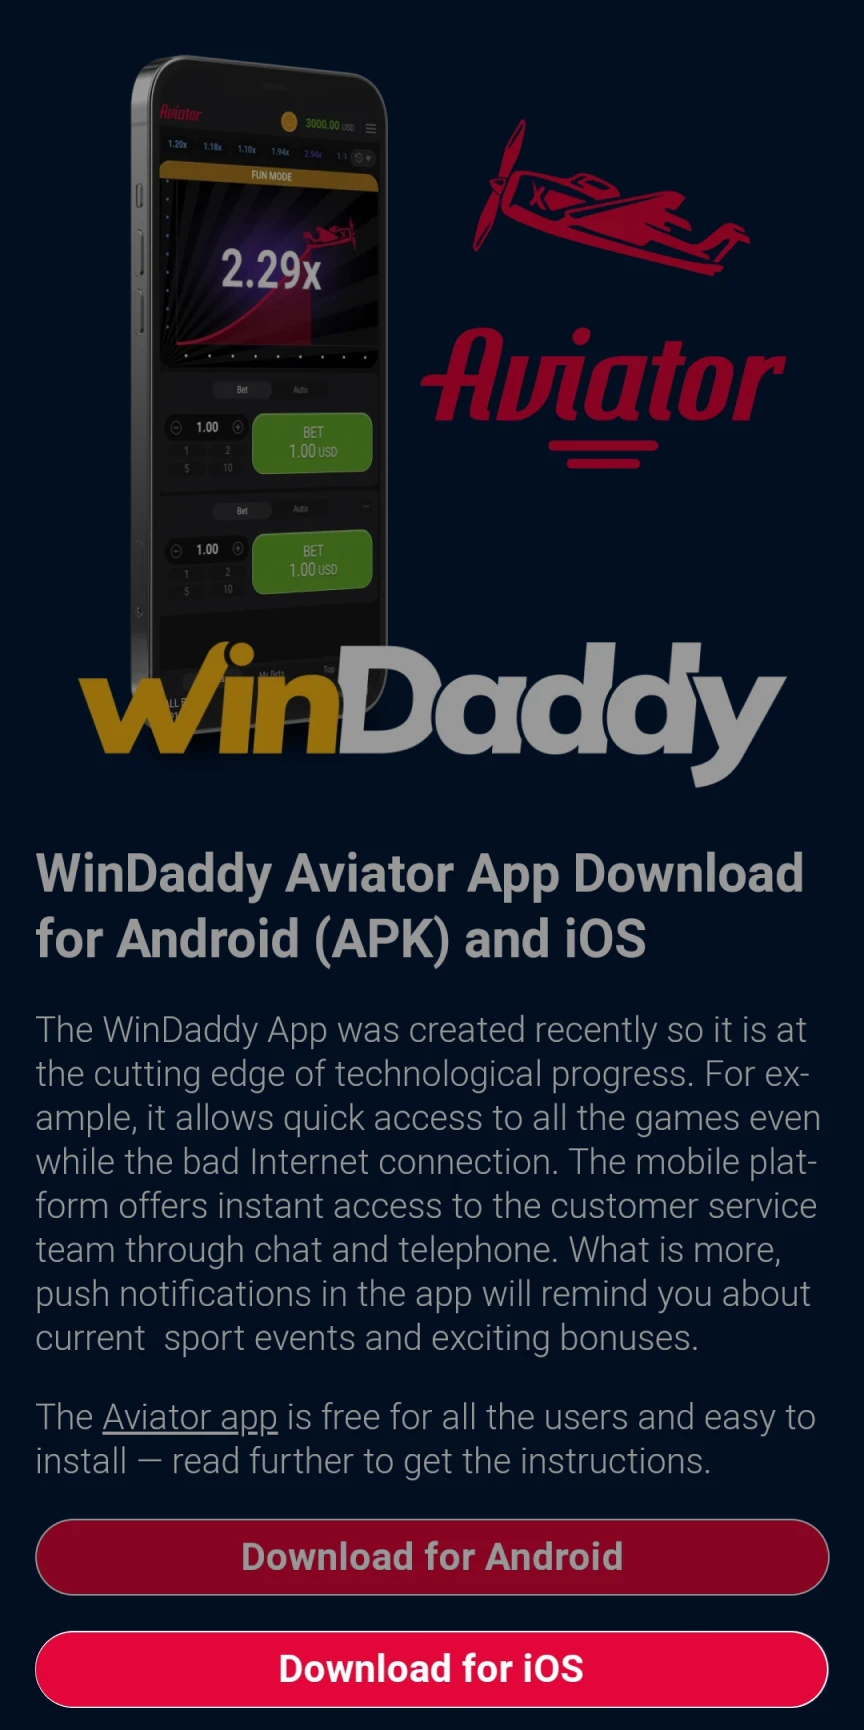 Vá para a página de download do WinDaddy para iOS.